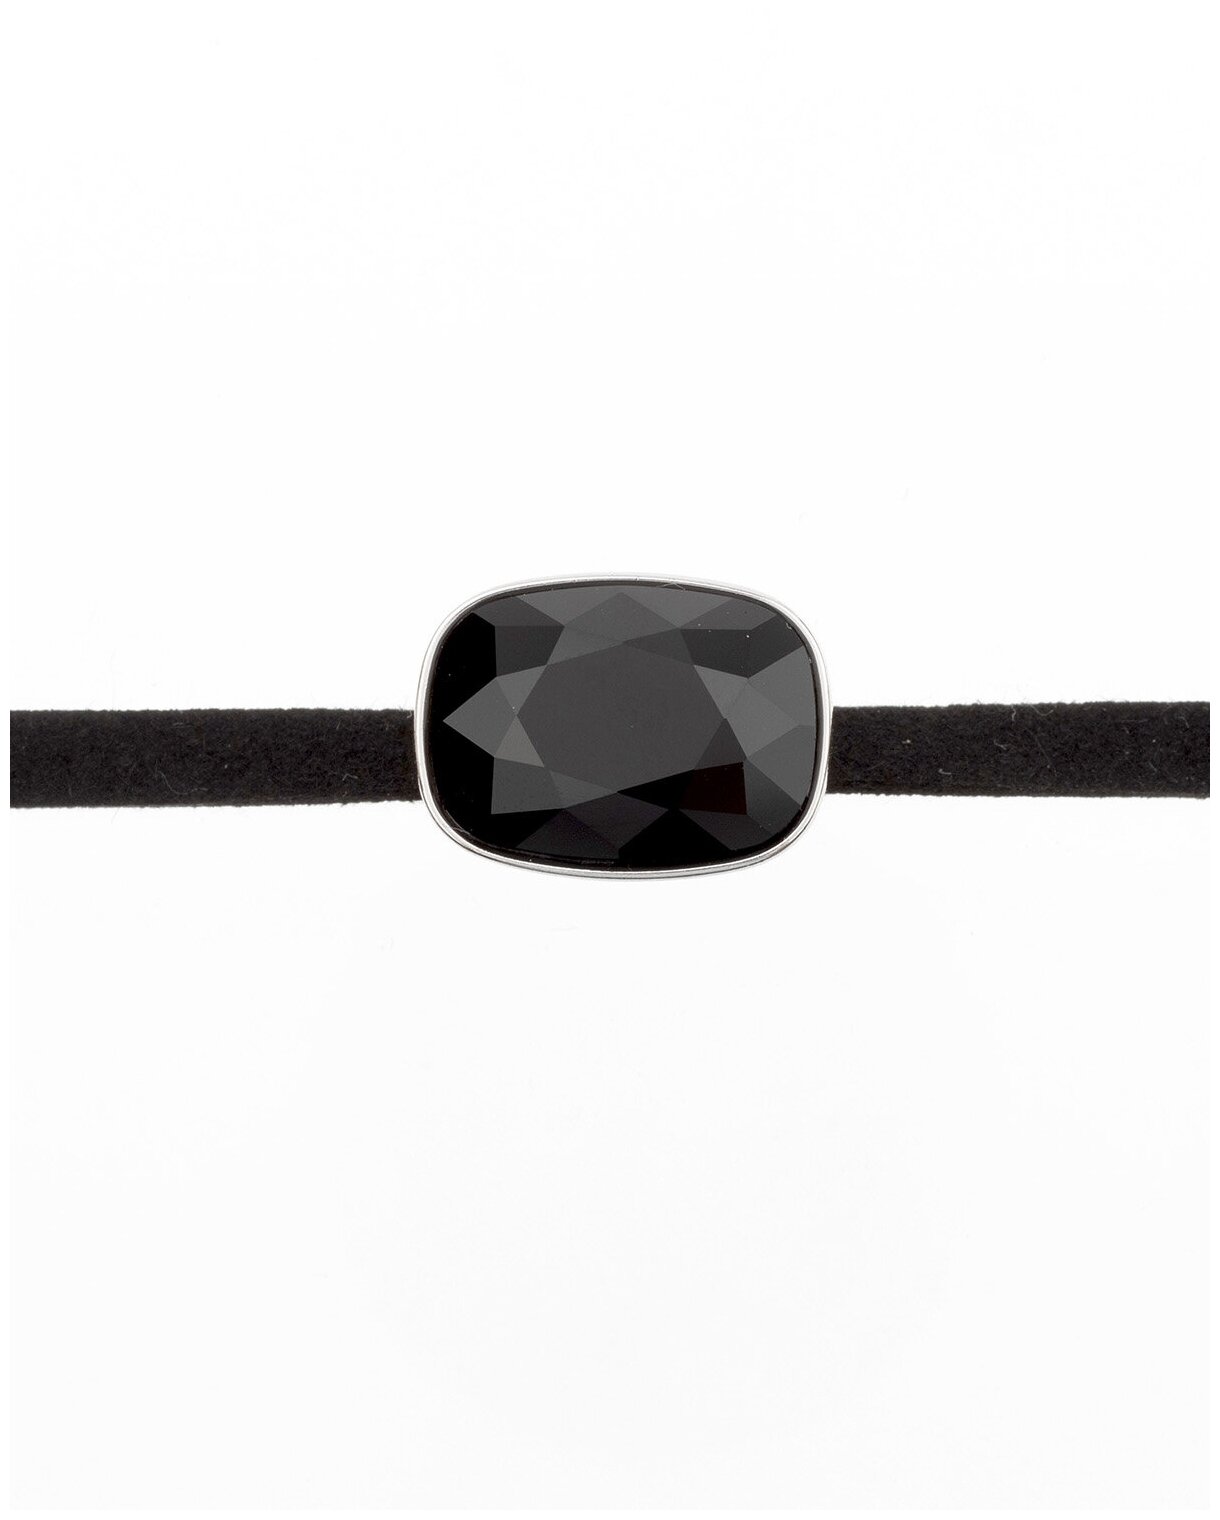 Бархотка чокер на шею с кристаллом Advanced Crystal черного цвета Ксюпинг 